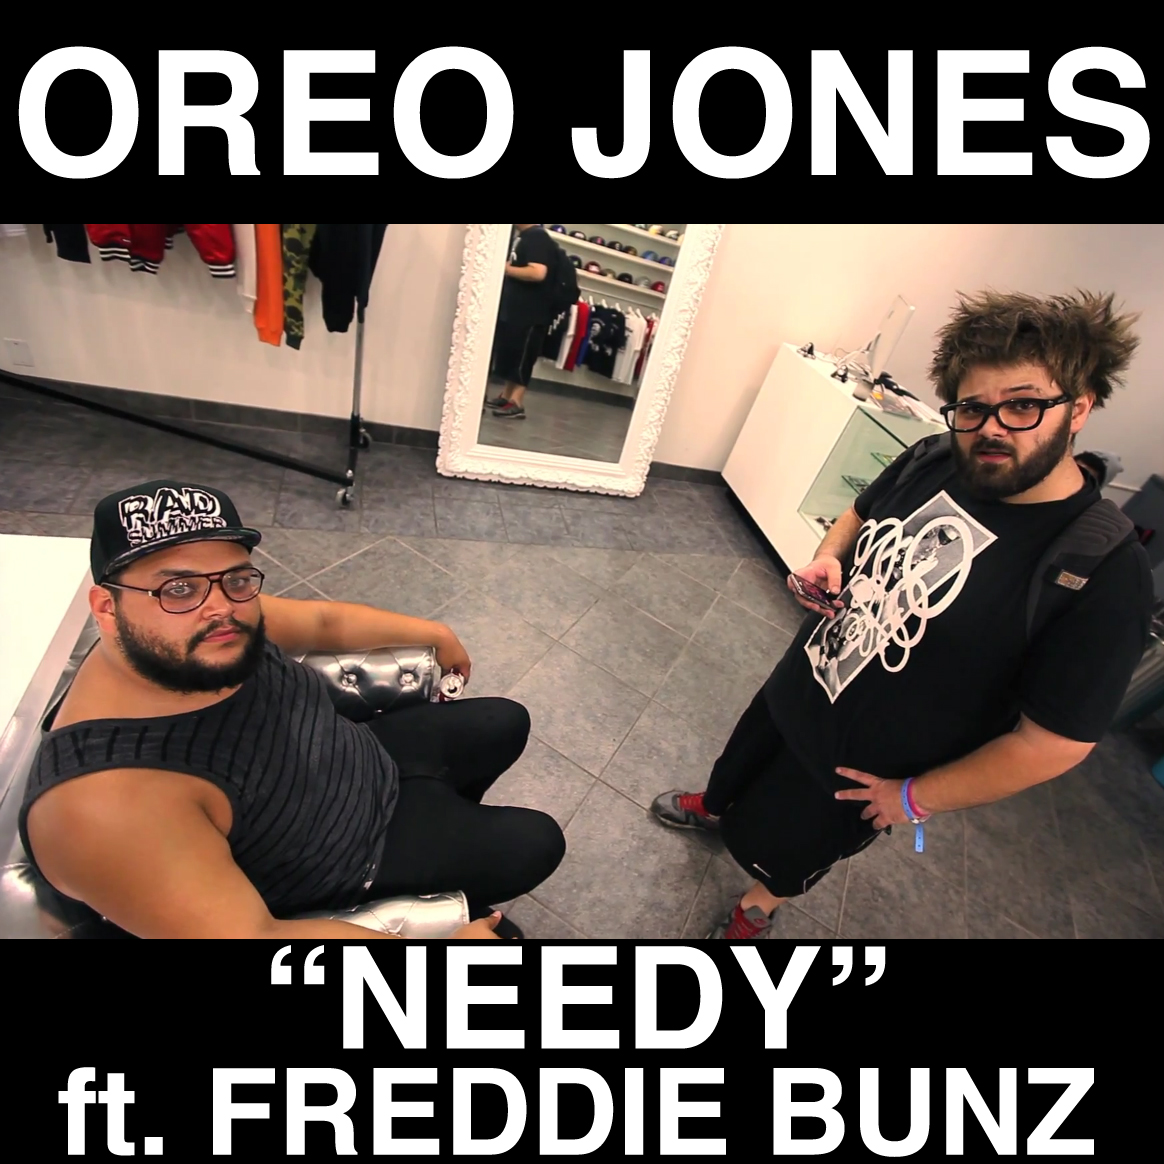 Oreo Jones ft. Freddie Bunz "Needy" (Produced by J. Brookinz) | @OreoJones @FreddieBunz @JBrookinz